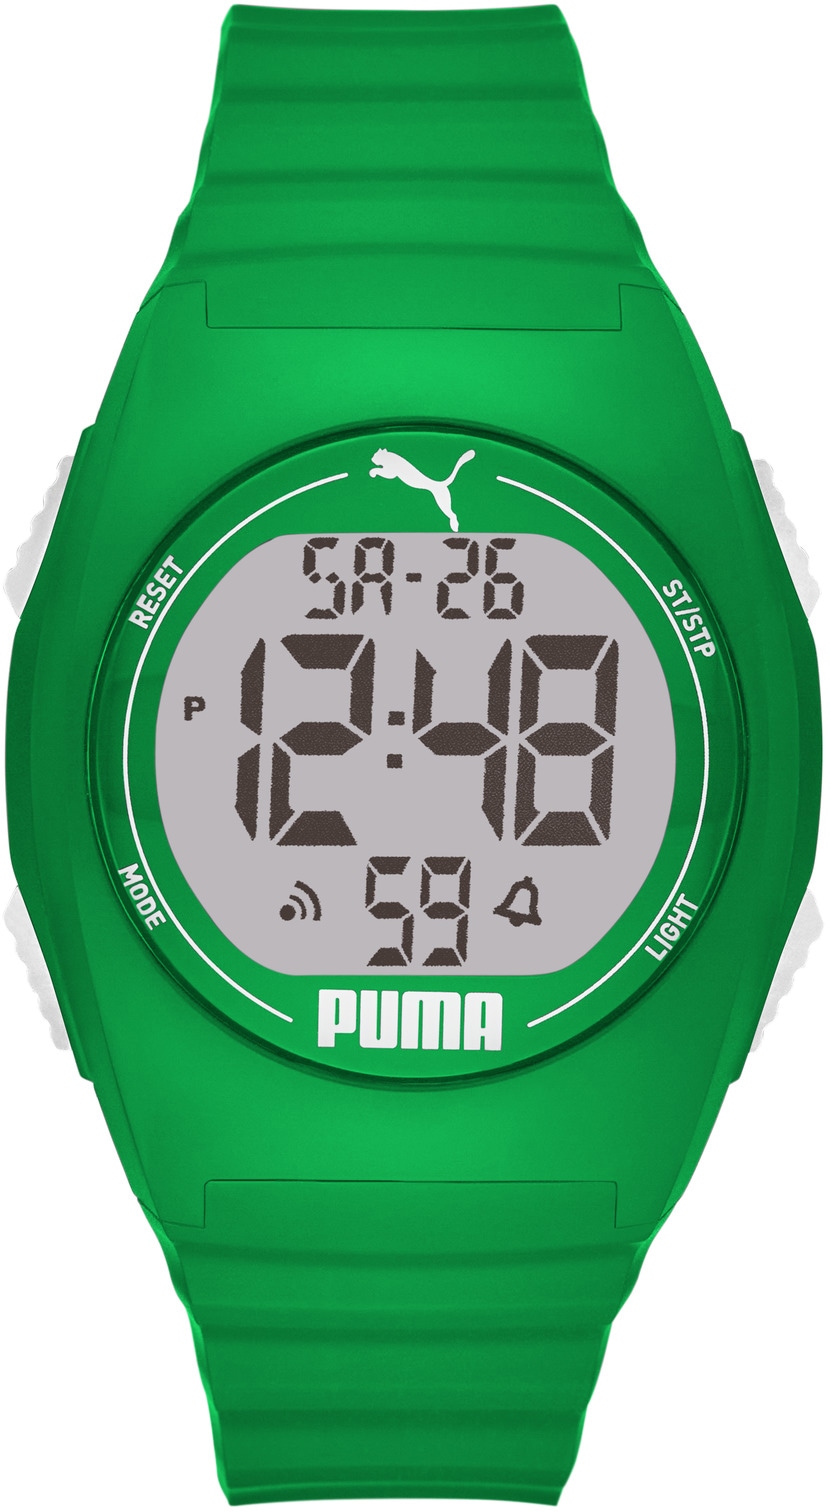 PUMA Digitaluhr »PUMA 4, P6040« kaufen Rechnung auf